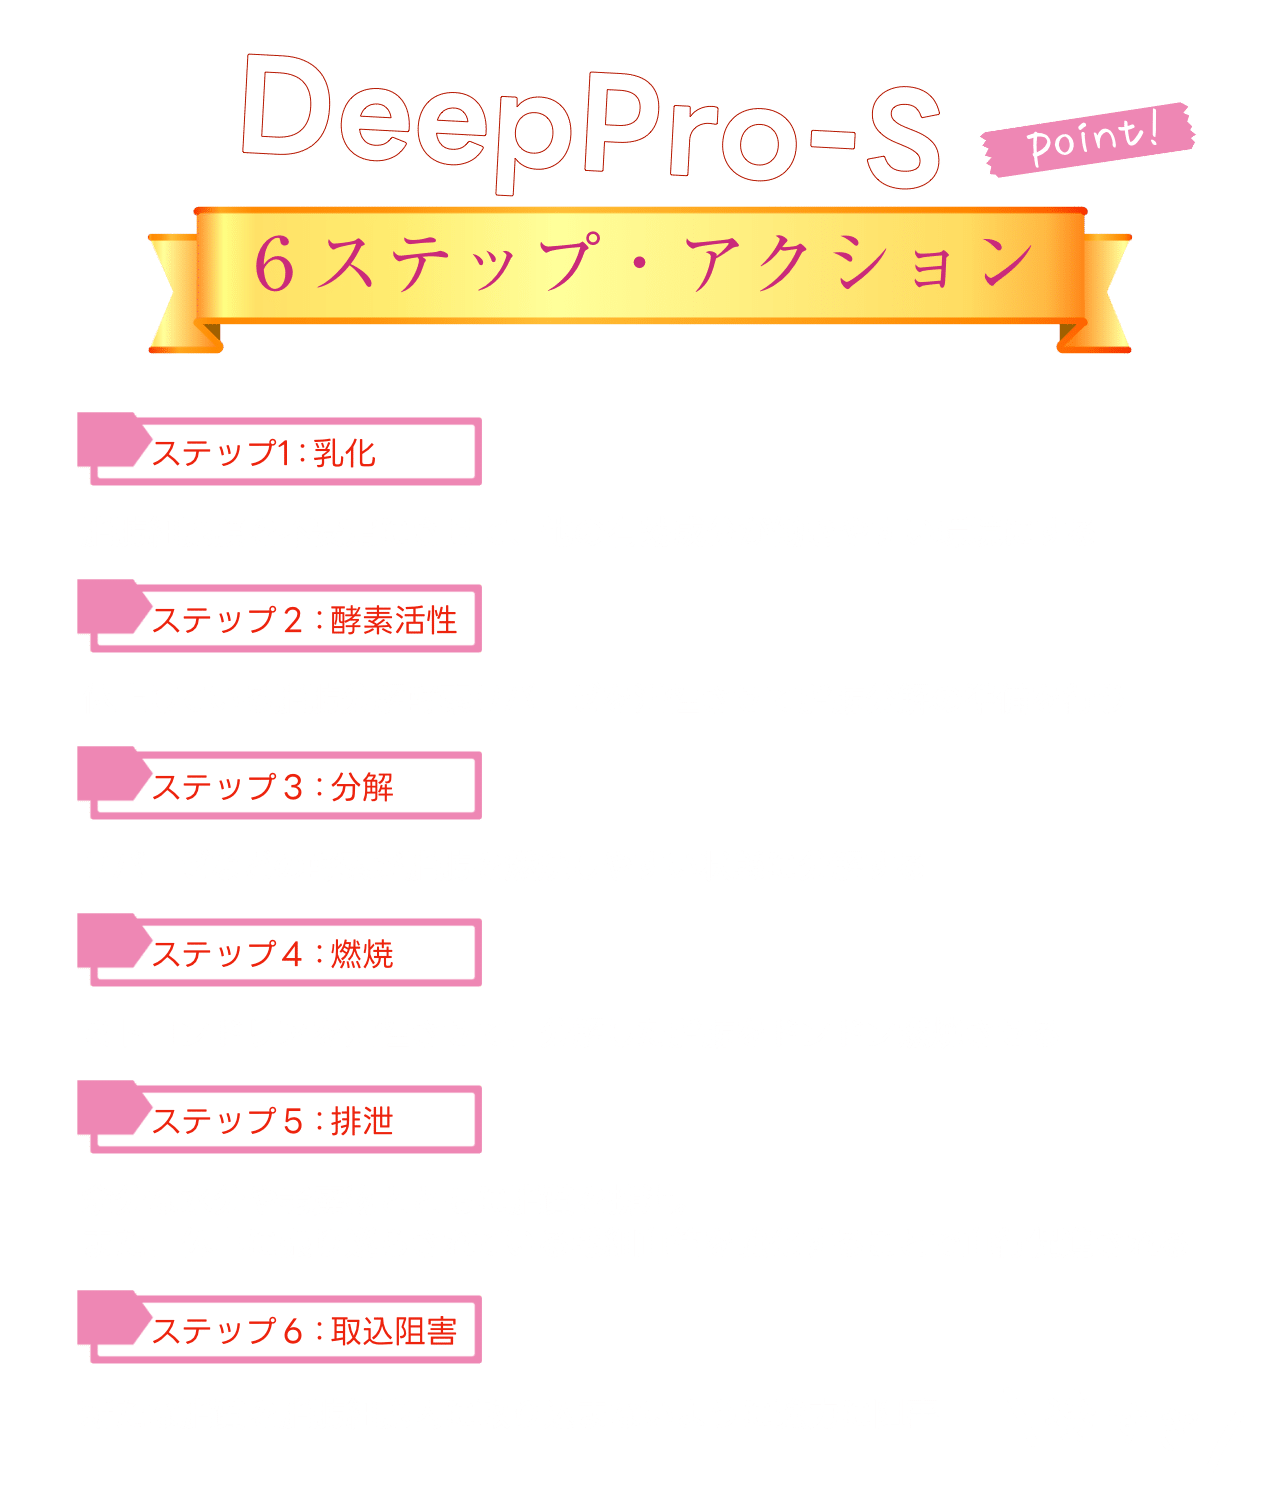 DeepPro-S詳細